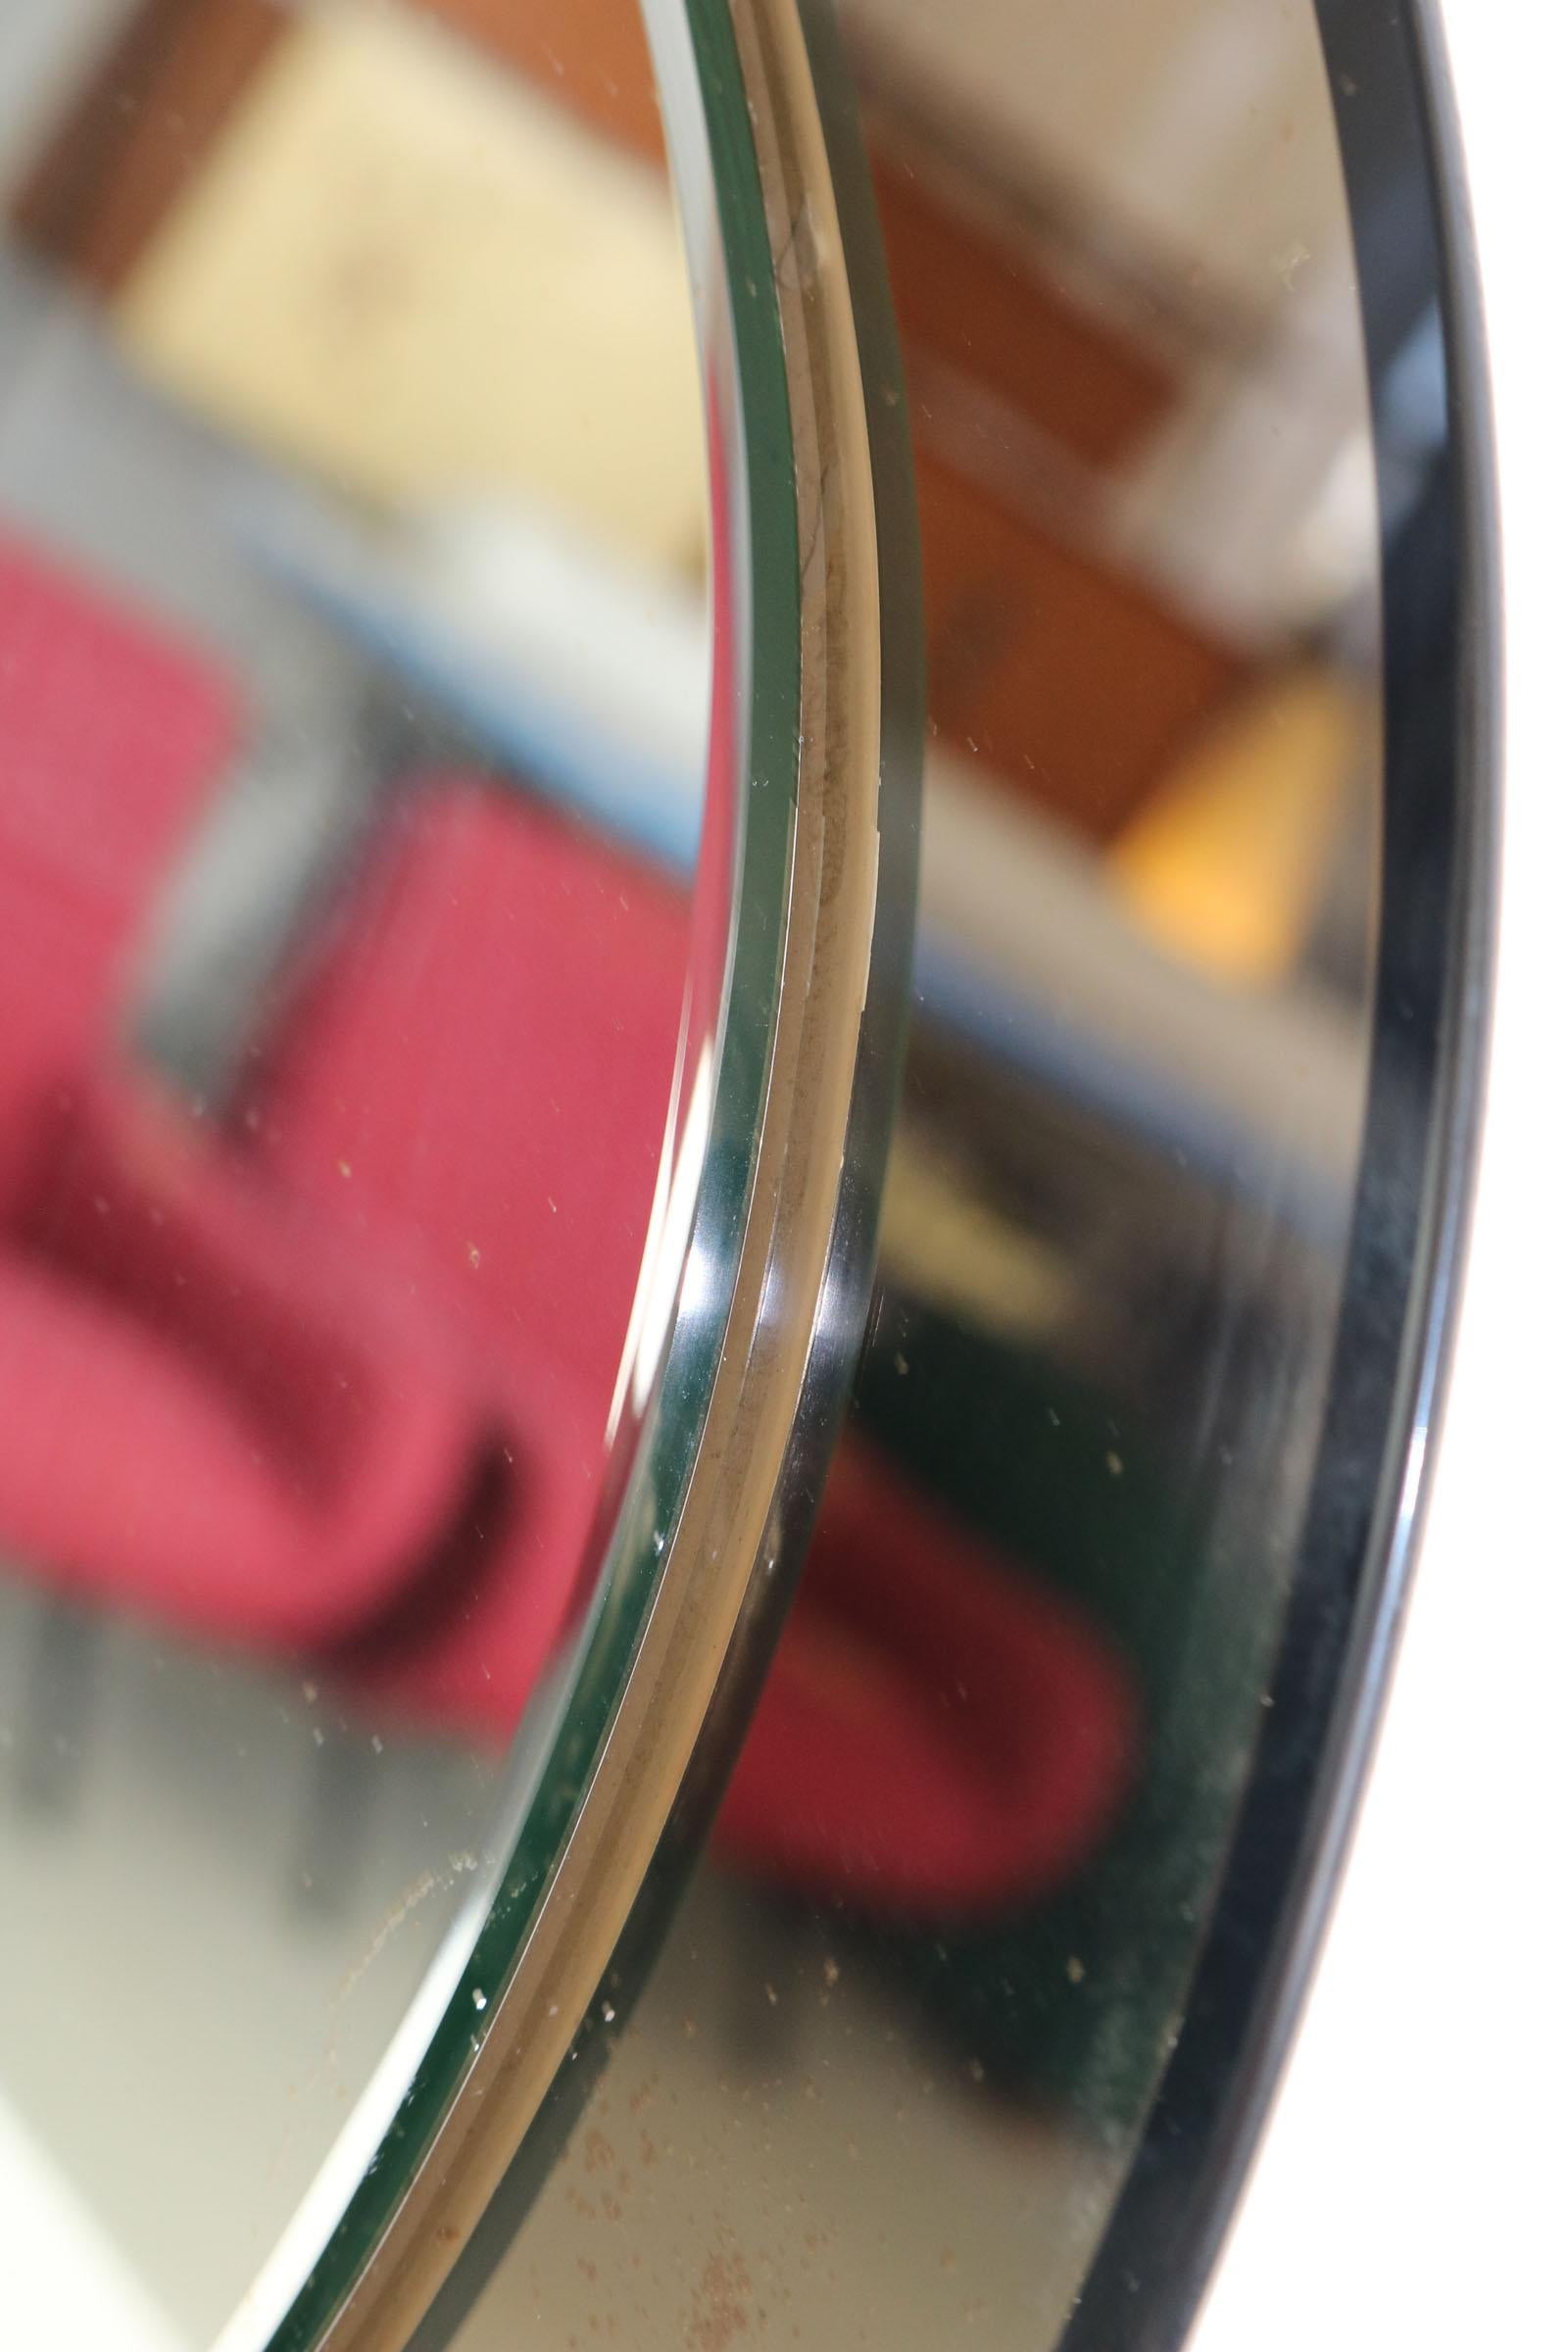 Oval Italian Twotone Mirror, Design: Antonio Lupi by Cristal Luxor, 1960s For Sale 4